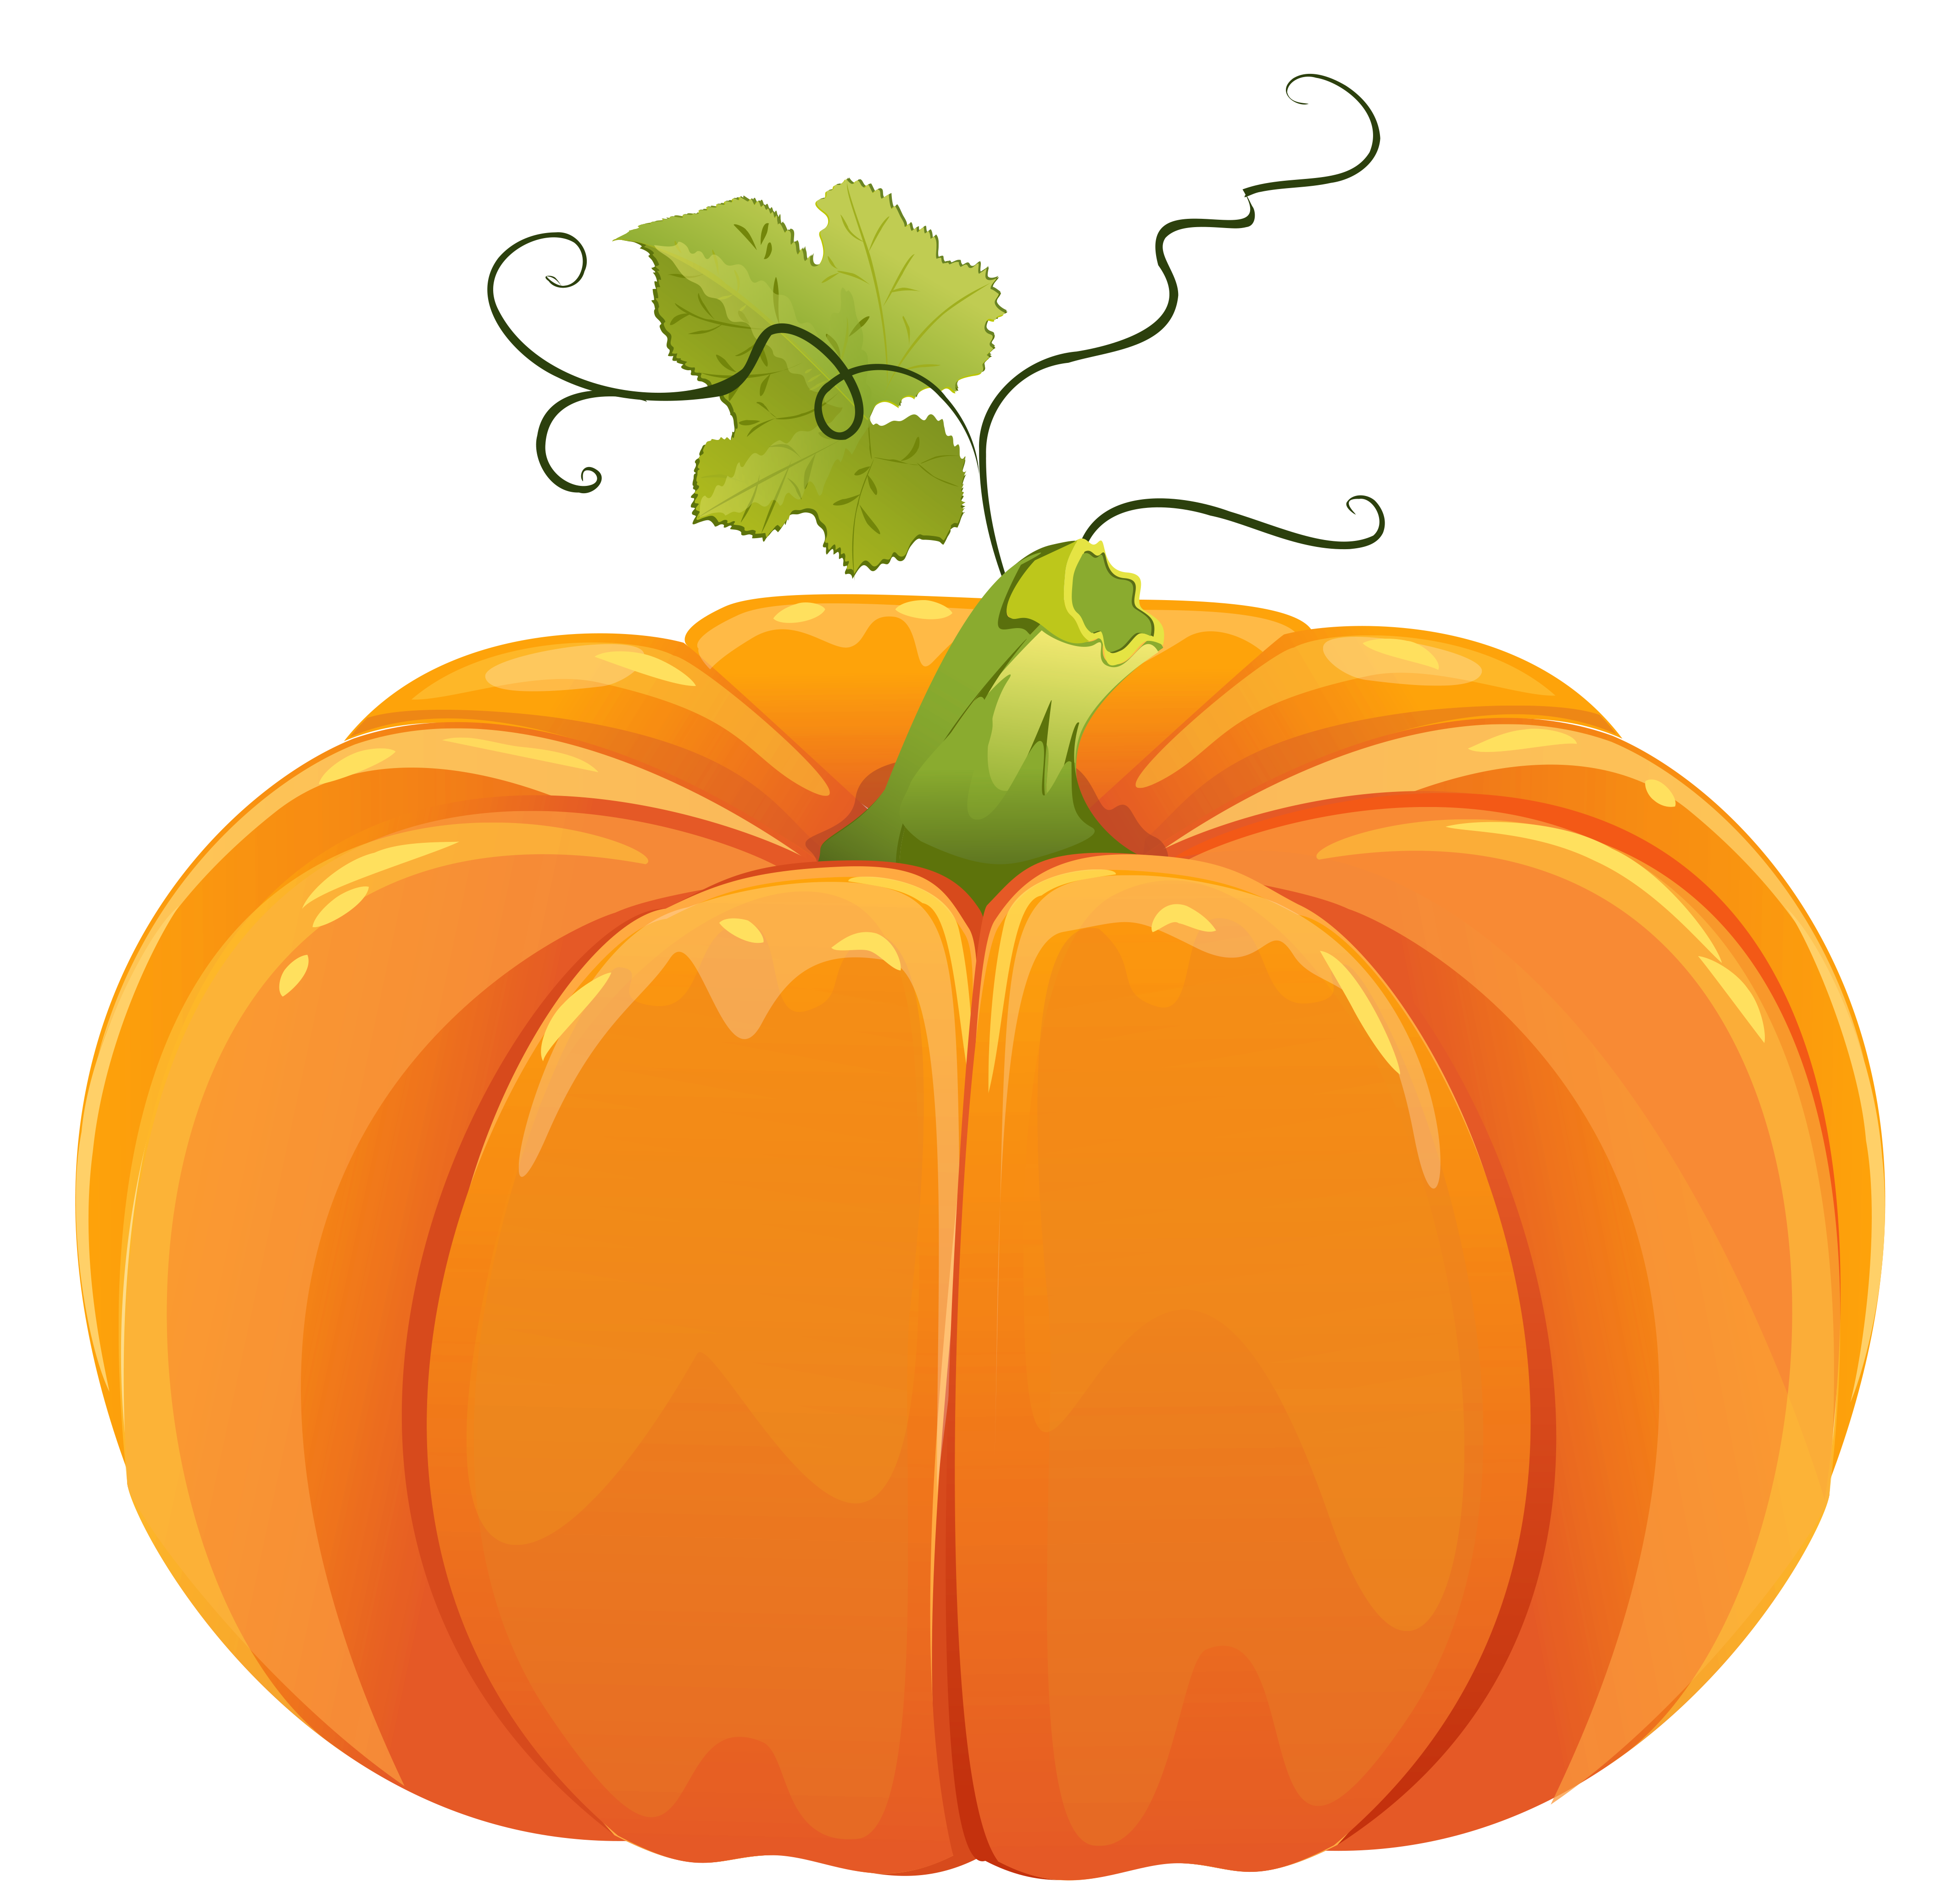 Autumn work pinterest png. October clipart pumpkin design